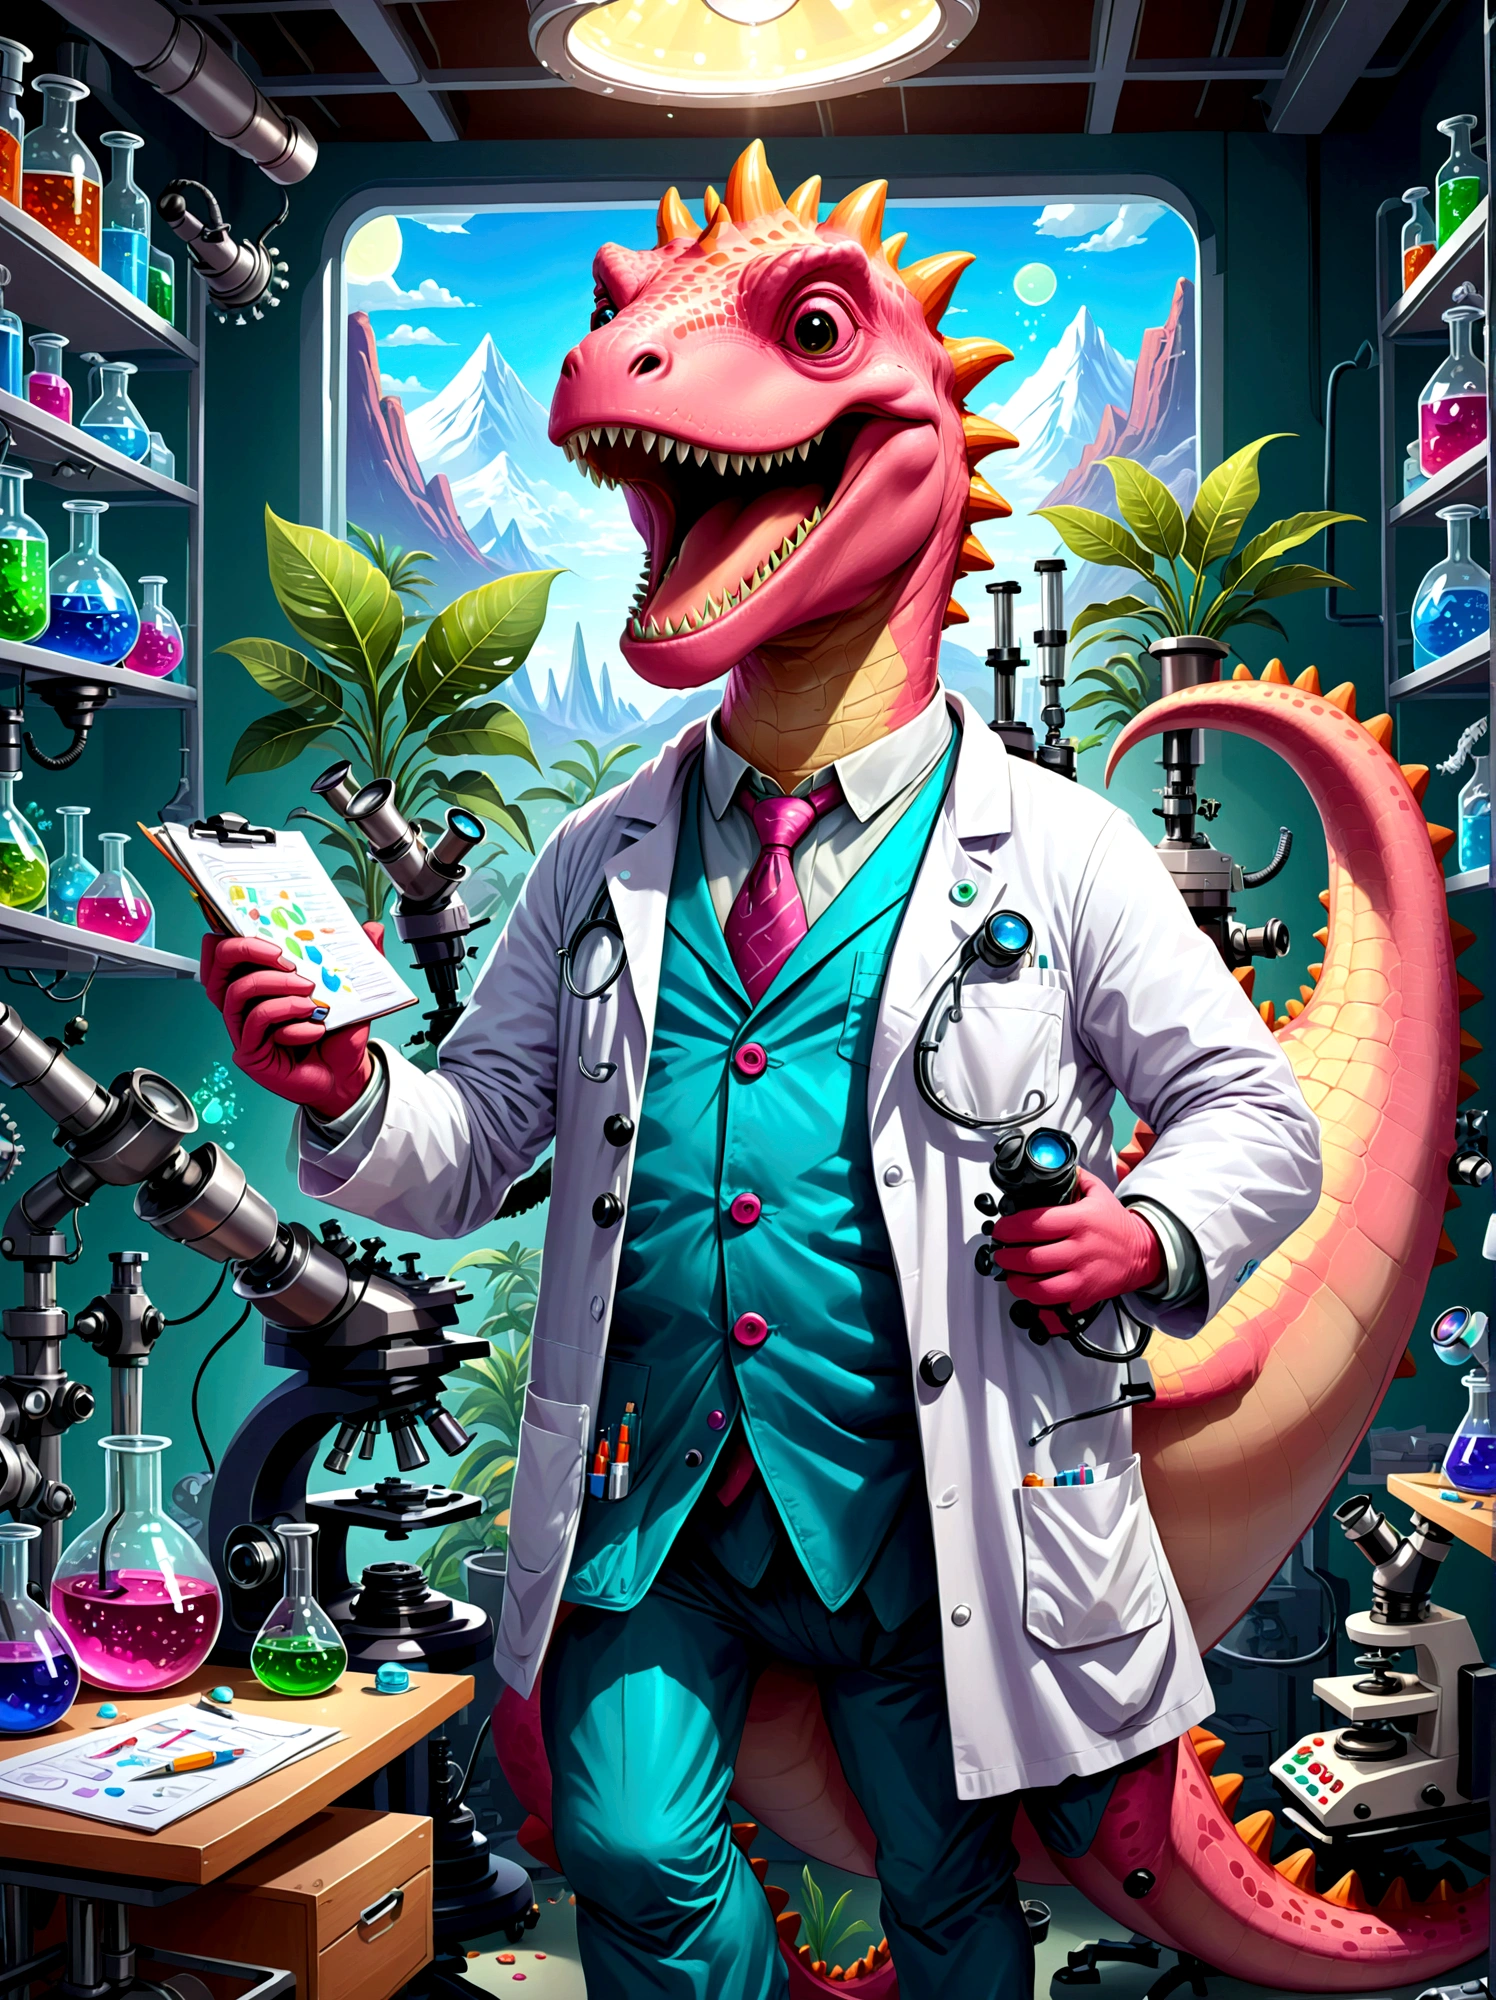 Um personagem de dinossauro rosa com uma ampla, Sorriso dentuço, Vestido como um pesquisador, Eles estão em um laboratório, cercado por equipamentos científicos como microscópios, copos, Tabelas e gráficos. O dinossauro está vestindo um jaleco, Protetor ocular, e segura uma prancheta na mão, Os papéis estão espalhados, indicando um dia de trabalho agitado, O ambiente do laboratório está repleto de luz proveniente de lâmpadas fluorescentes suspensas, Ilustre isso em estilo cartoon